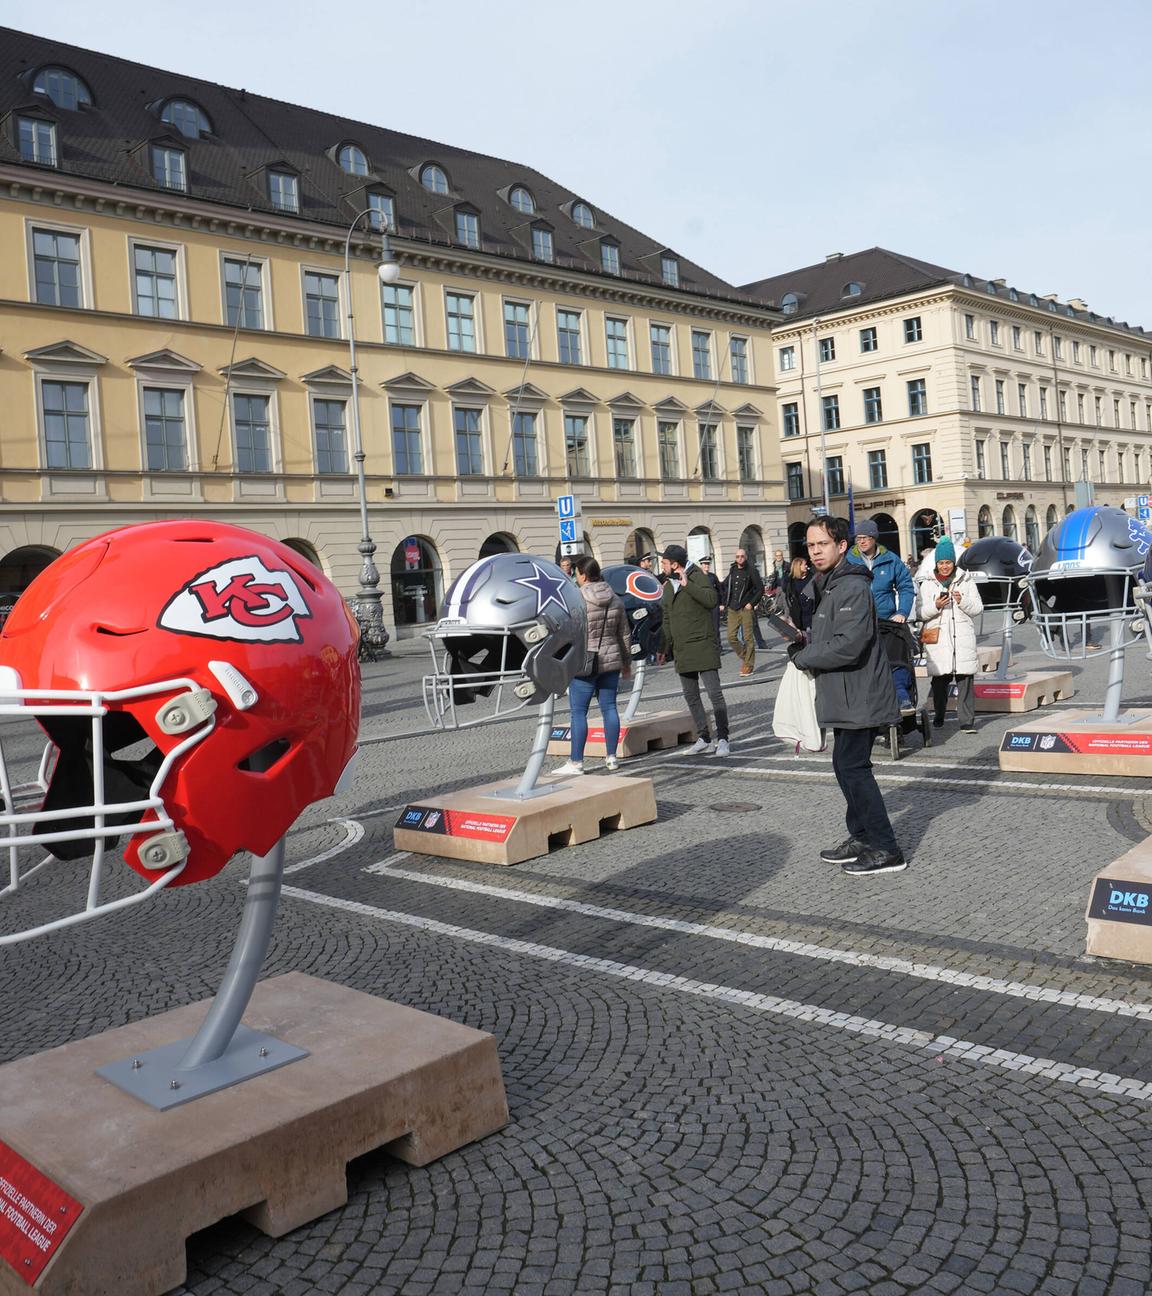 Werbeaktion der NFL mit überdimensionalen Football-Helmen auf dem Münchner Odeonsplatz vor dem Munich Game